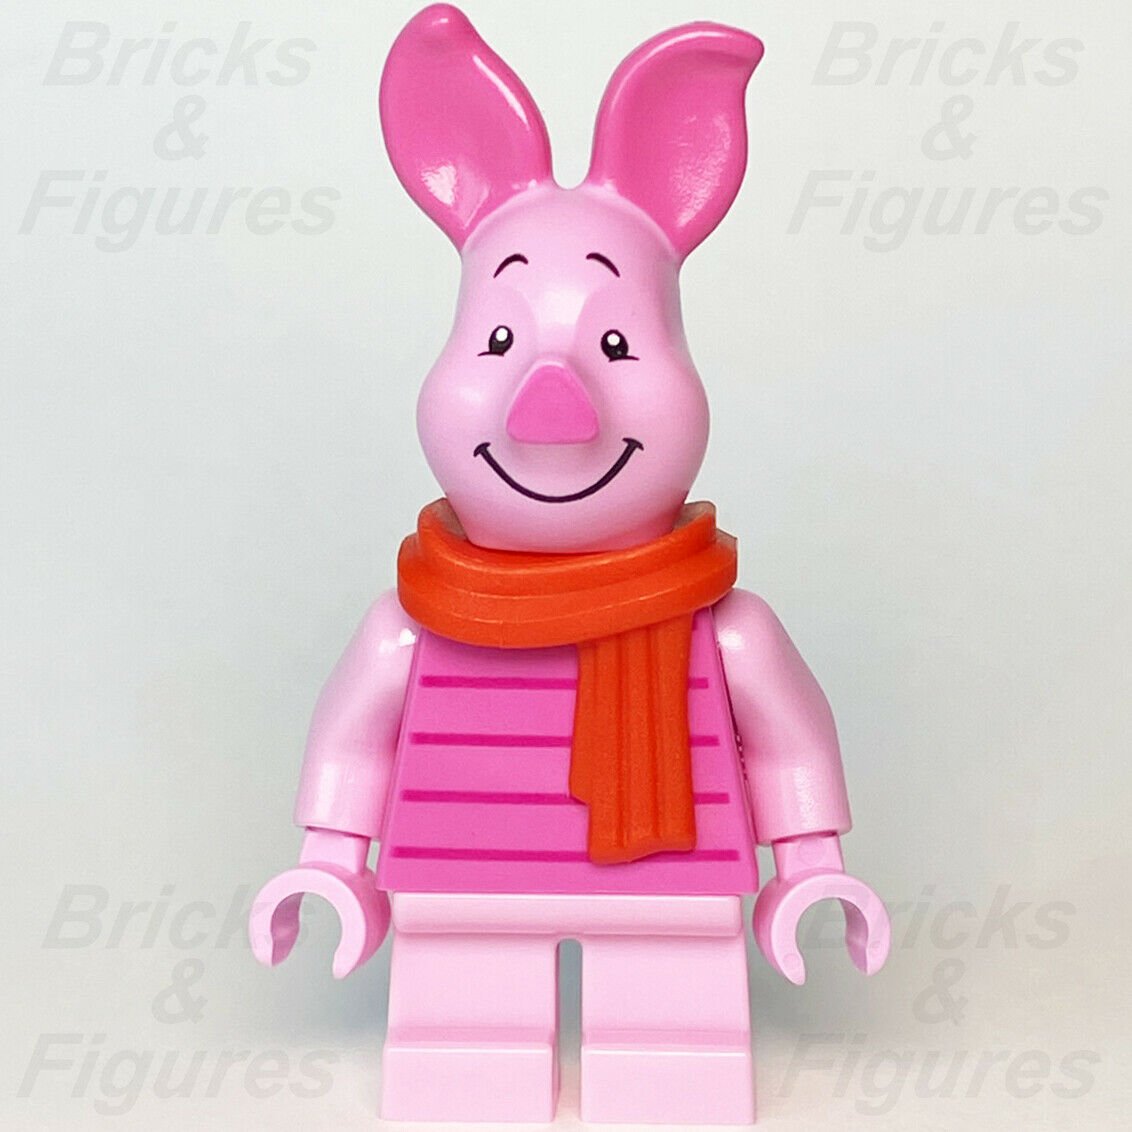 New Ideas LEGO Piglet CUUSOO Winnie the Pooh Minifigure 21326 idea088 - Bricks & Figures